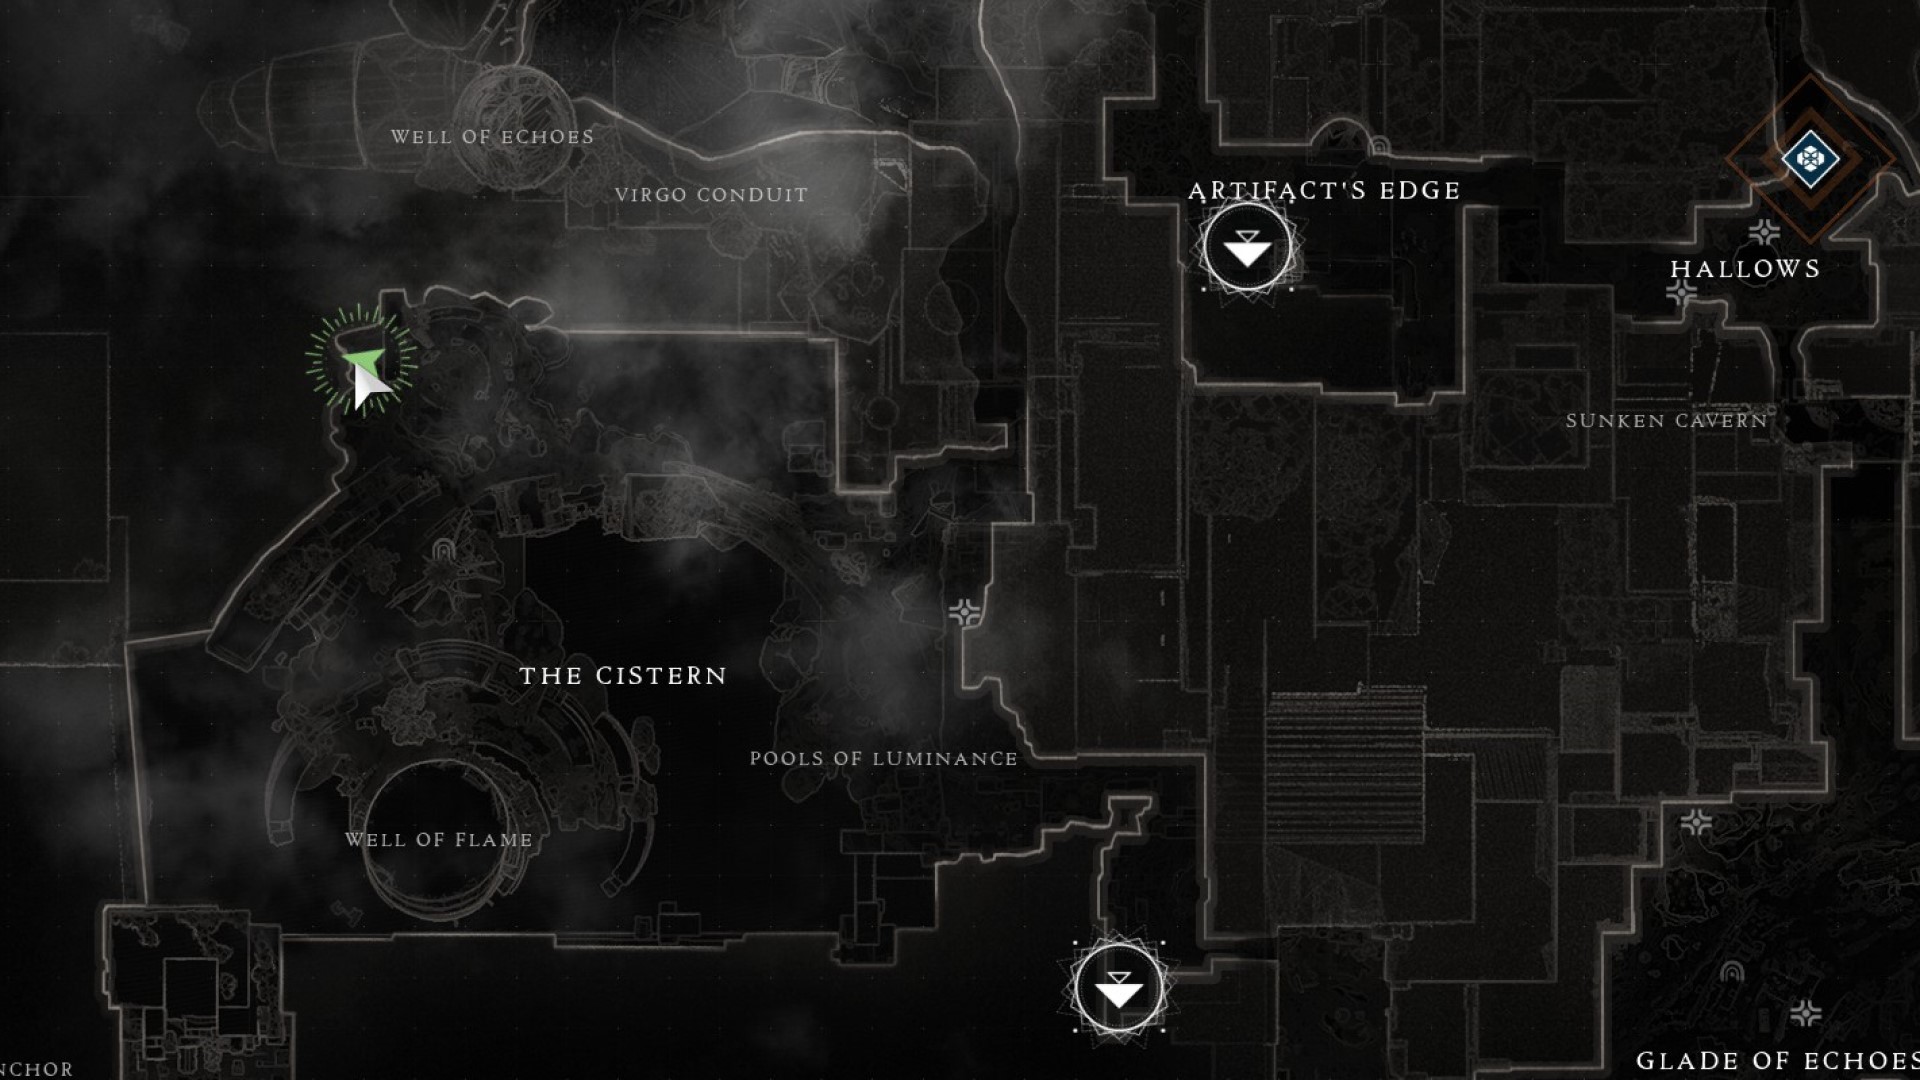 Destiny 2 Cryptic Quatrain 2 location